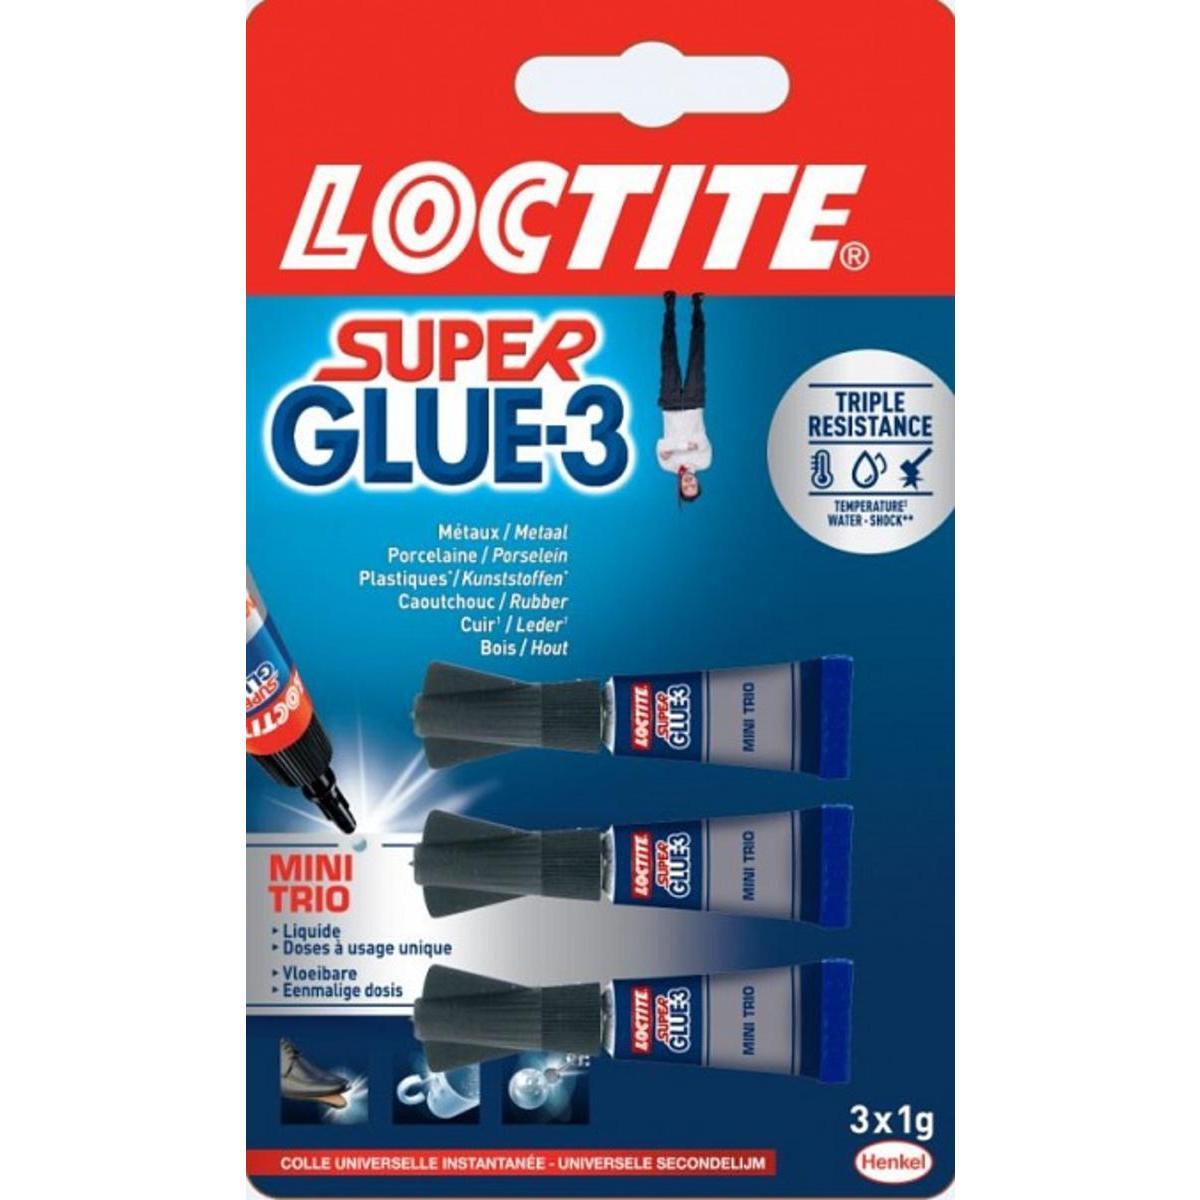 Super glue Loctite